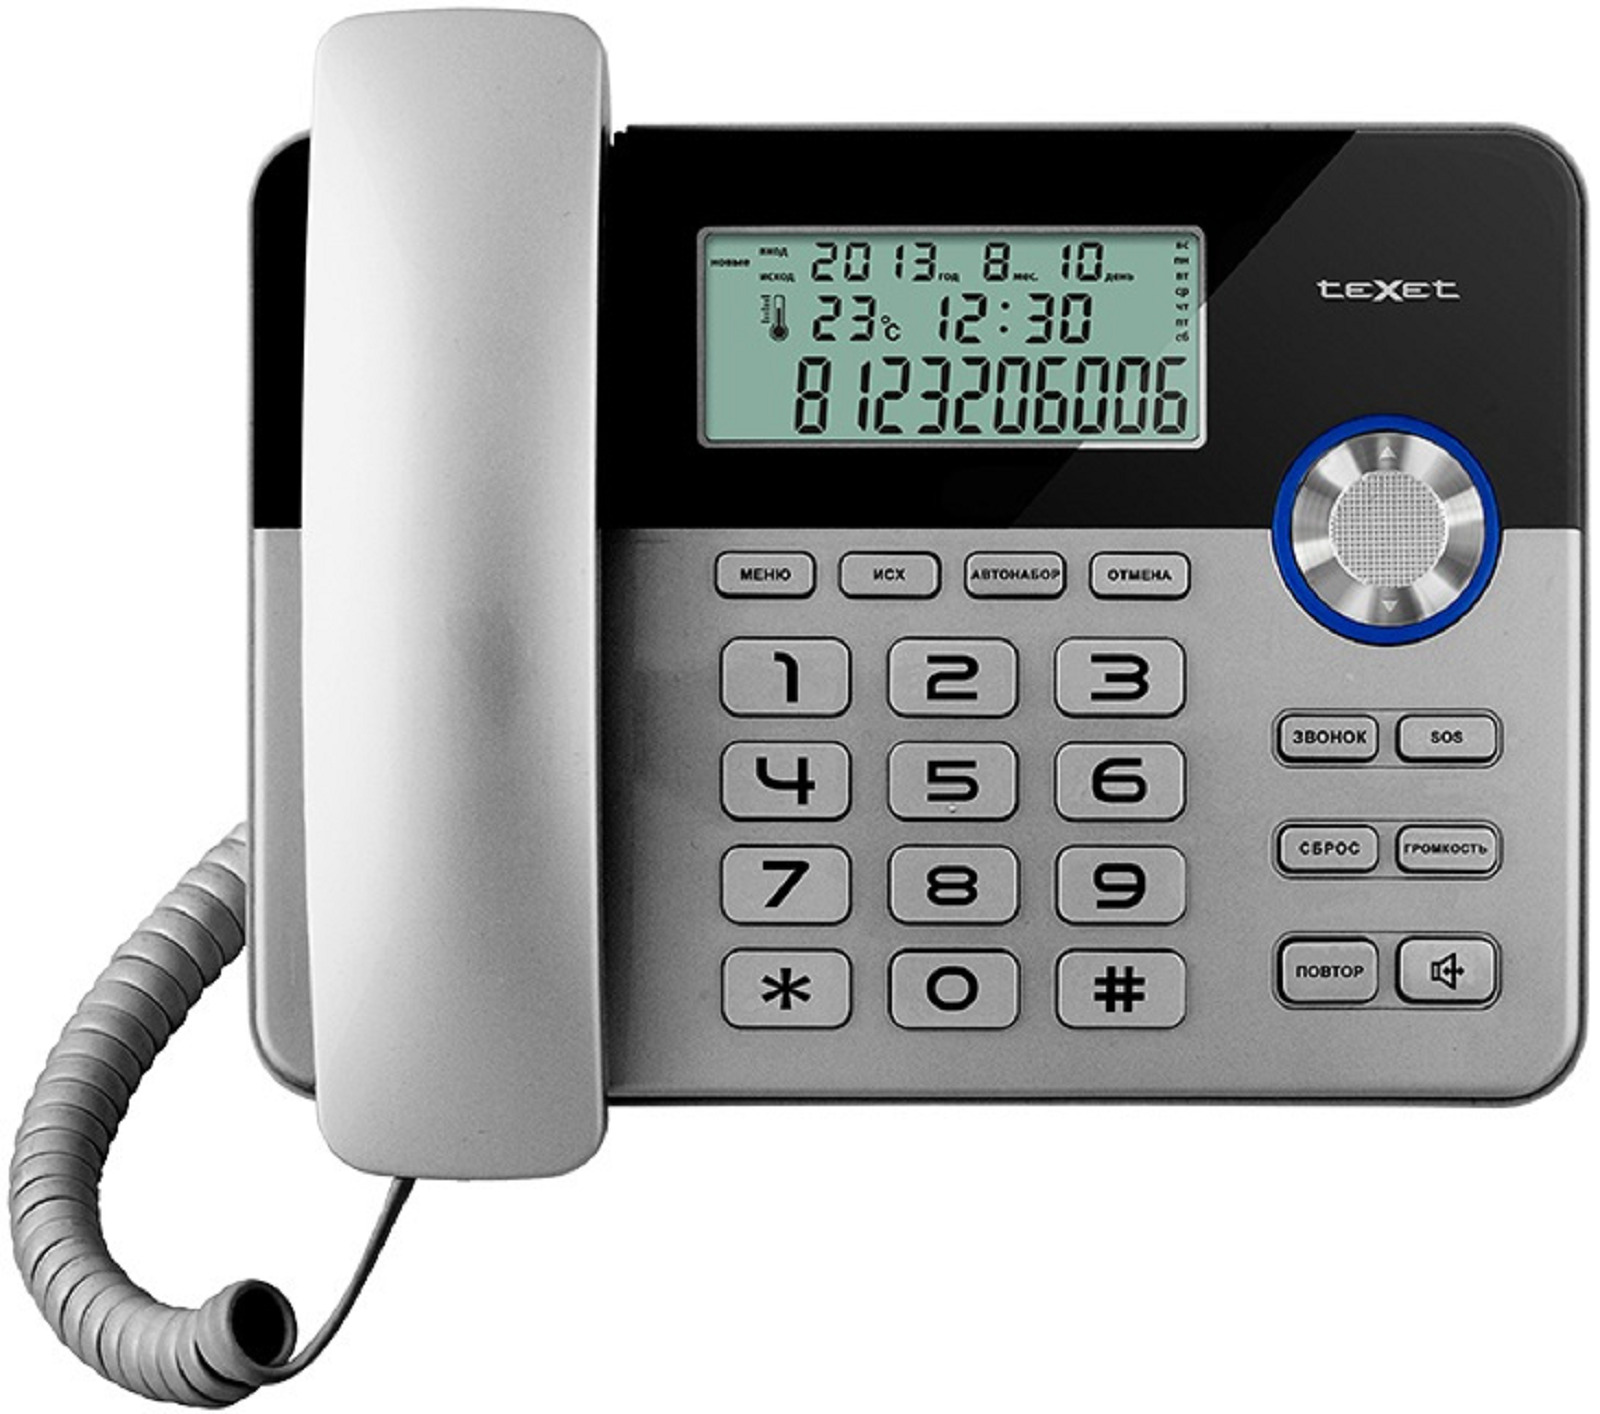 Стационарный телефон купить в спб. TEXET TX-259. Телефон проводной TEXET TX-259. Телефонный аппарат TEXET ТХ-259 (черный-серебристый). TEXET ТХ-259.